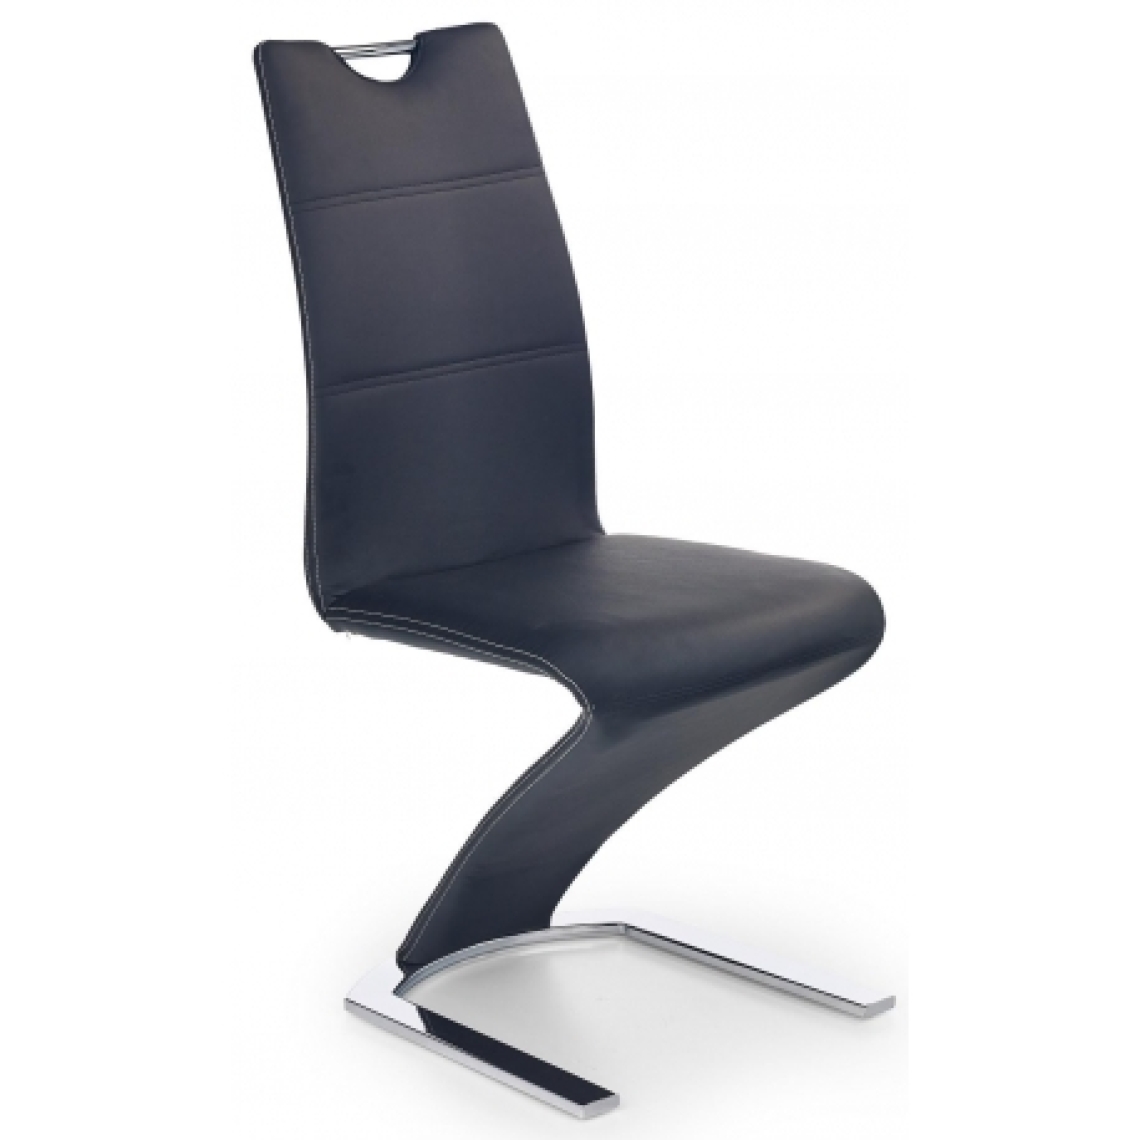 Carellia - INGRID Lot de 2 chaises design en cuir synthétique - Noir - Chaises